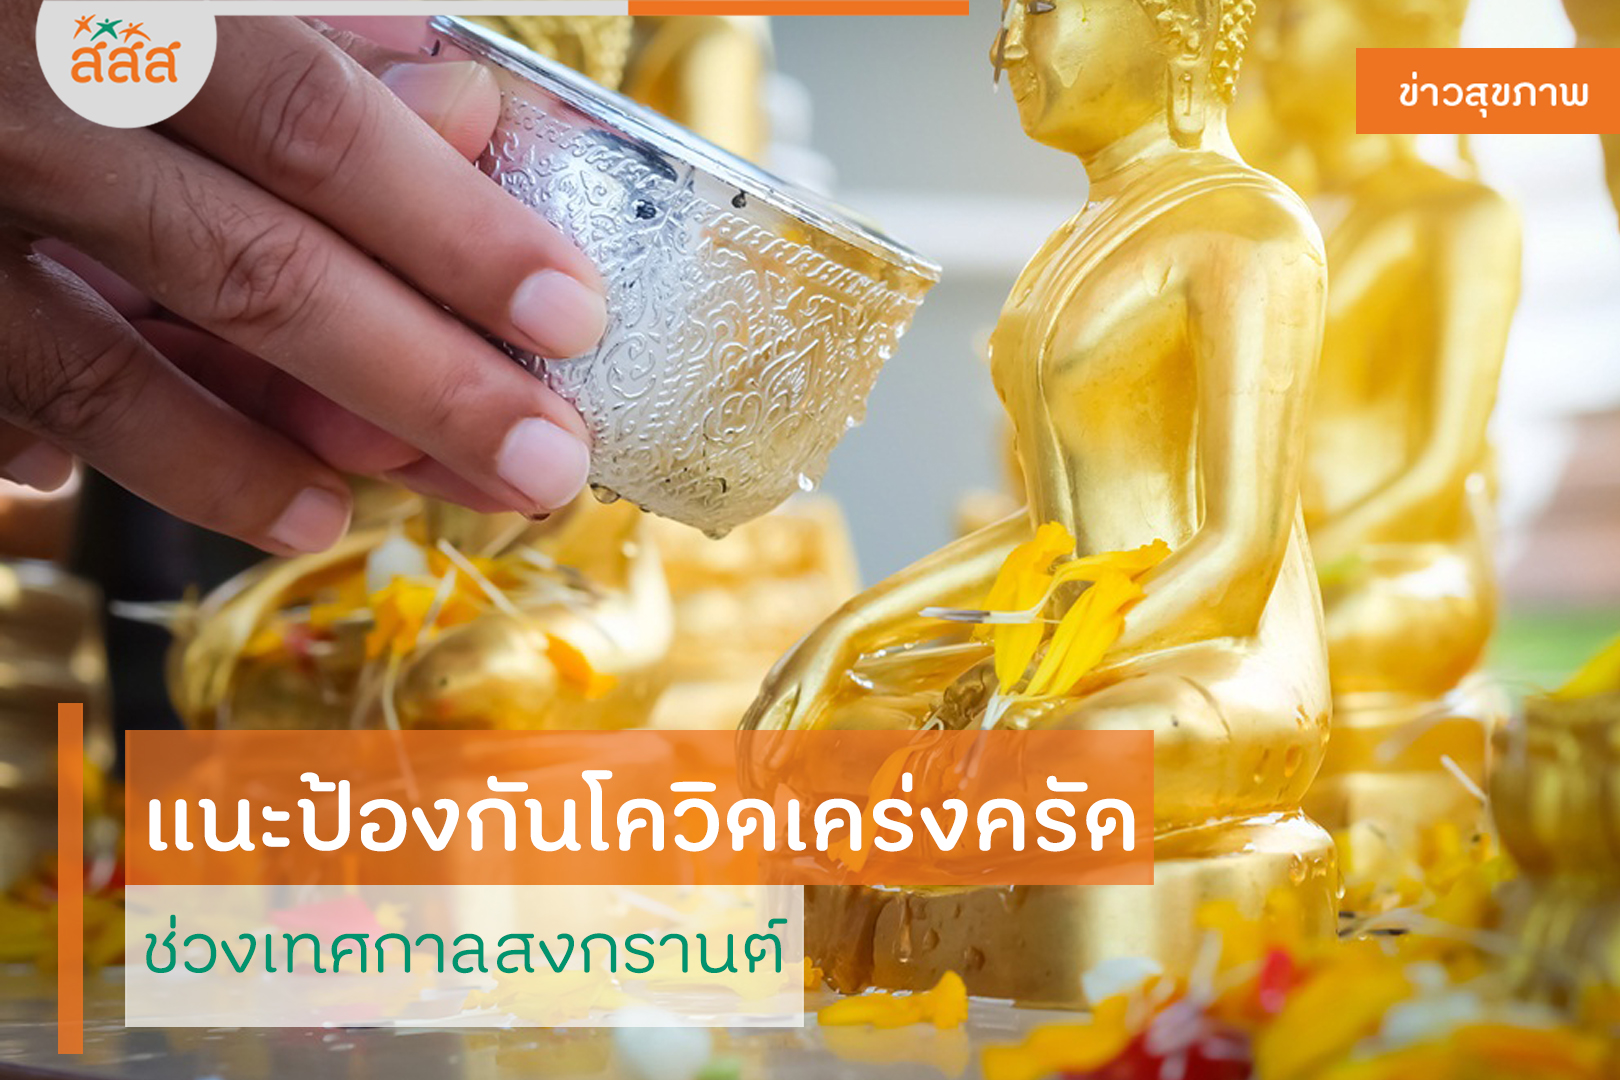 แนะป้องกันโควิดเคร่งครัด ช่วงเทศกาลสงกรานต์ thaihealth